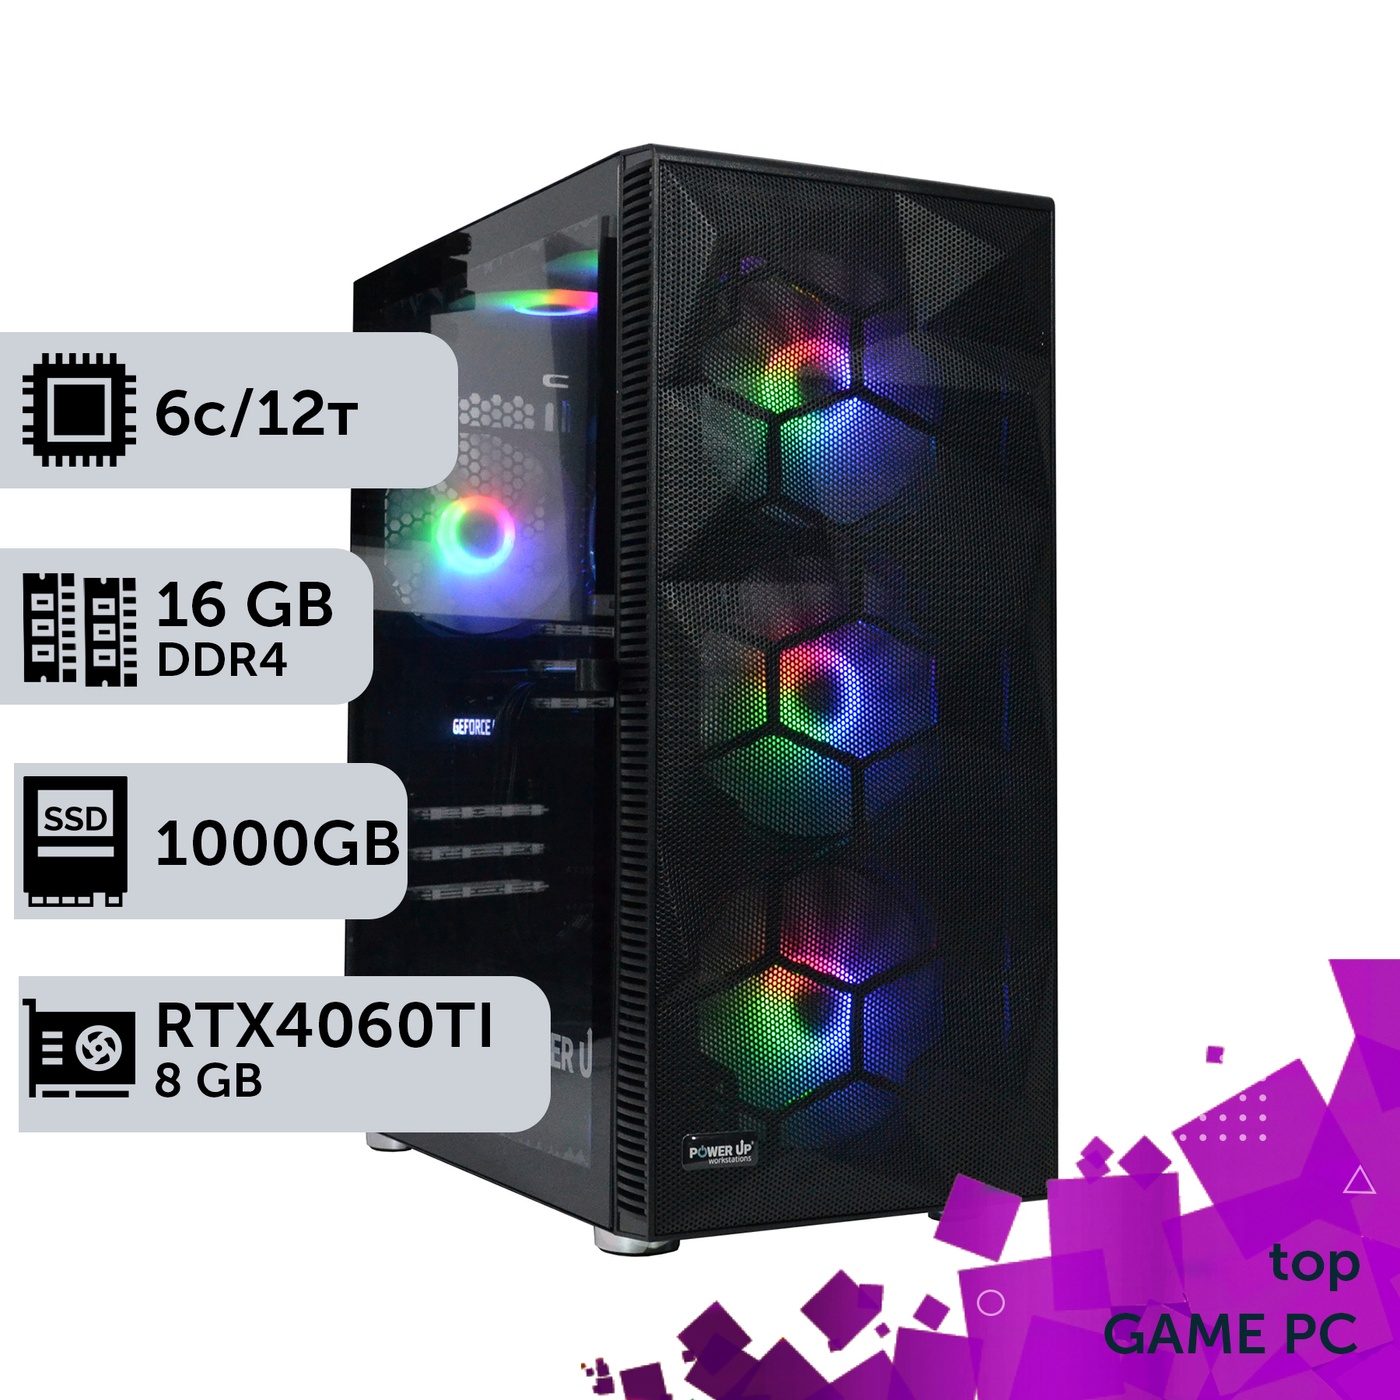 Ігровий комп'ютер GamePC TOP #316 Core i5 10400F/16 GB/SSD 1TB/GeForce RTX 4060Ti 8GB